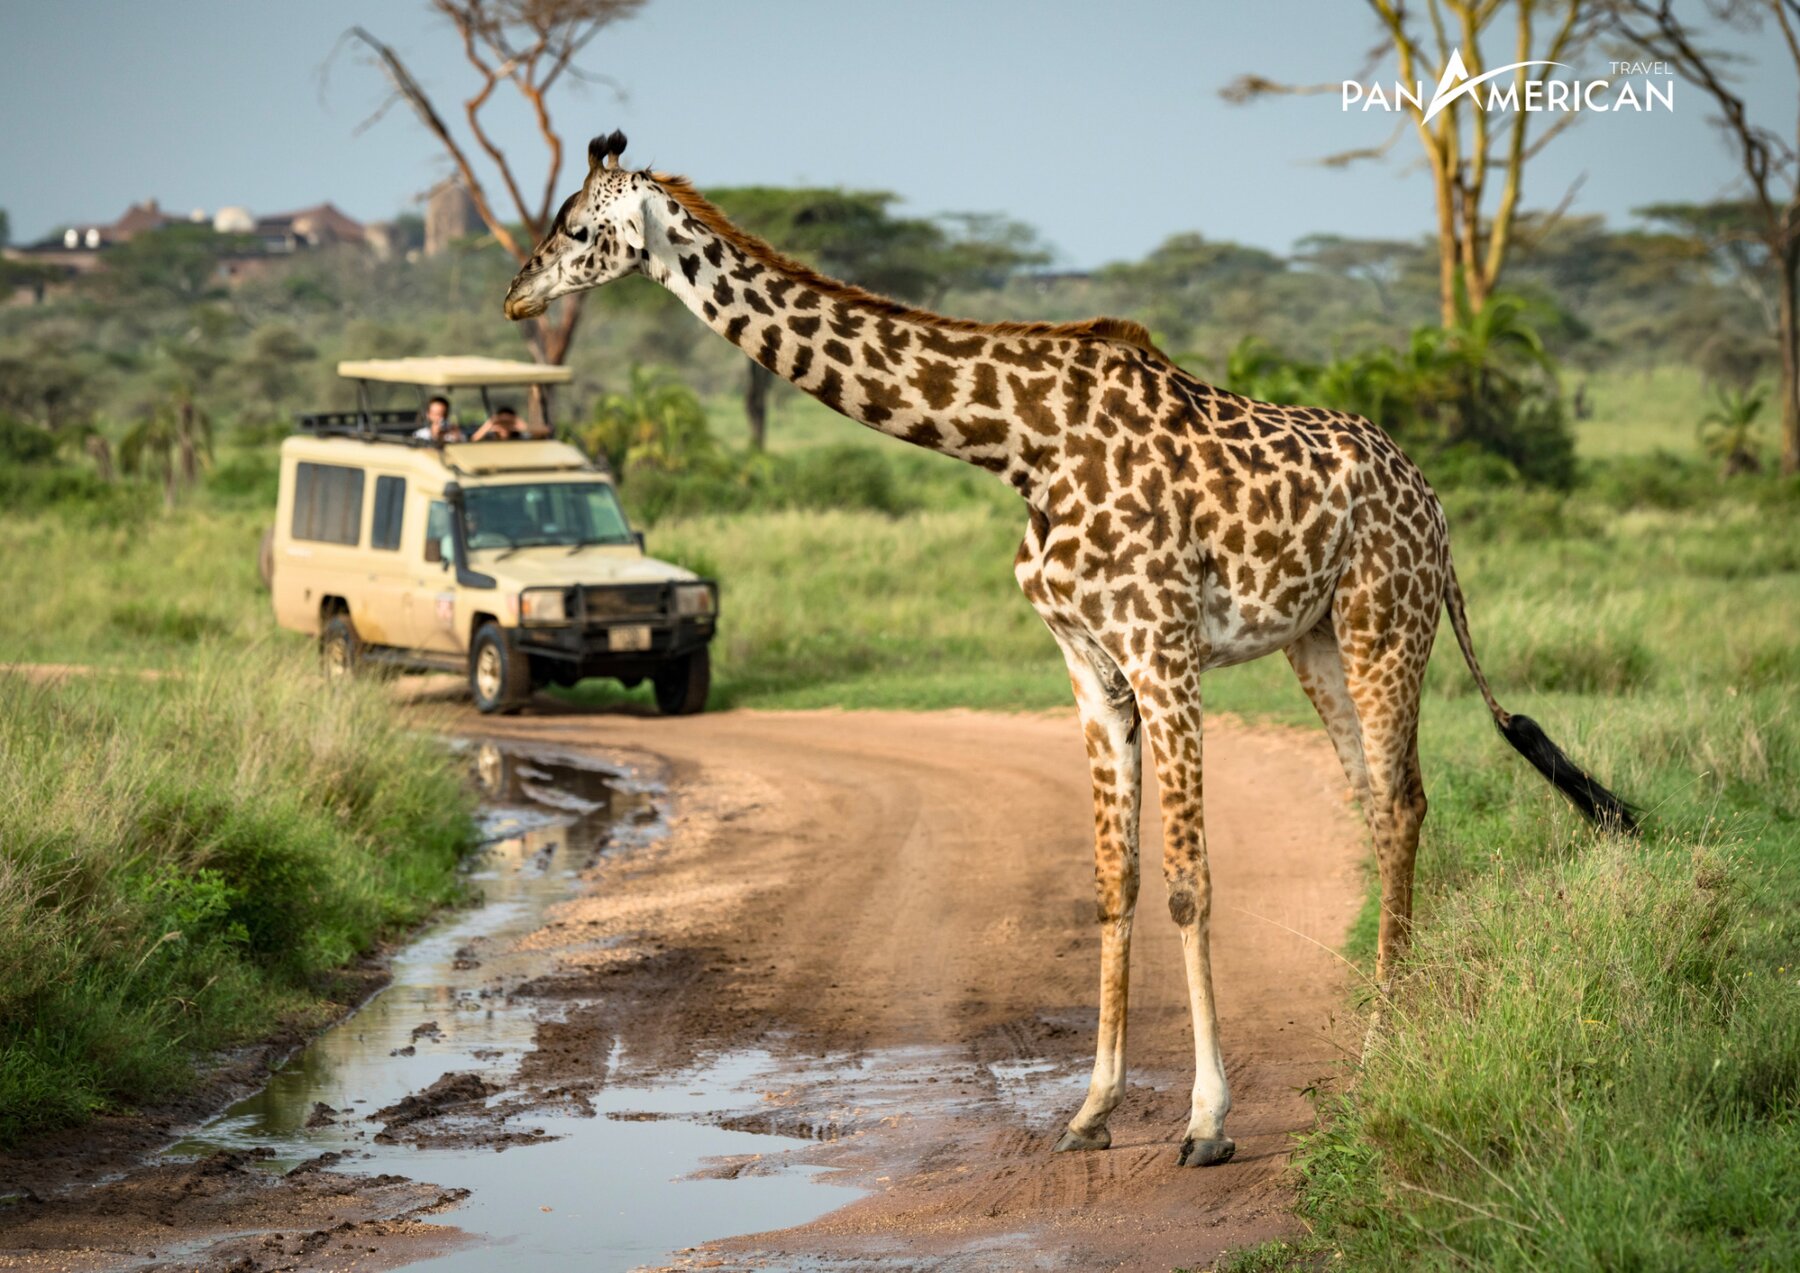 Tour du lịch châu Phi - Khám phá châu Phi hoang dã (10N9Đ)